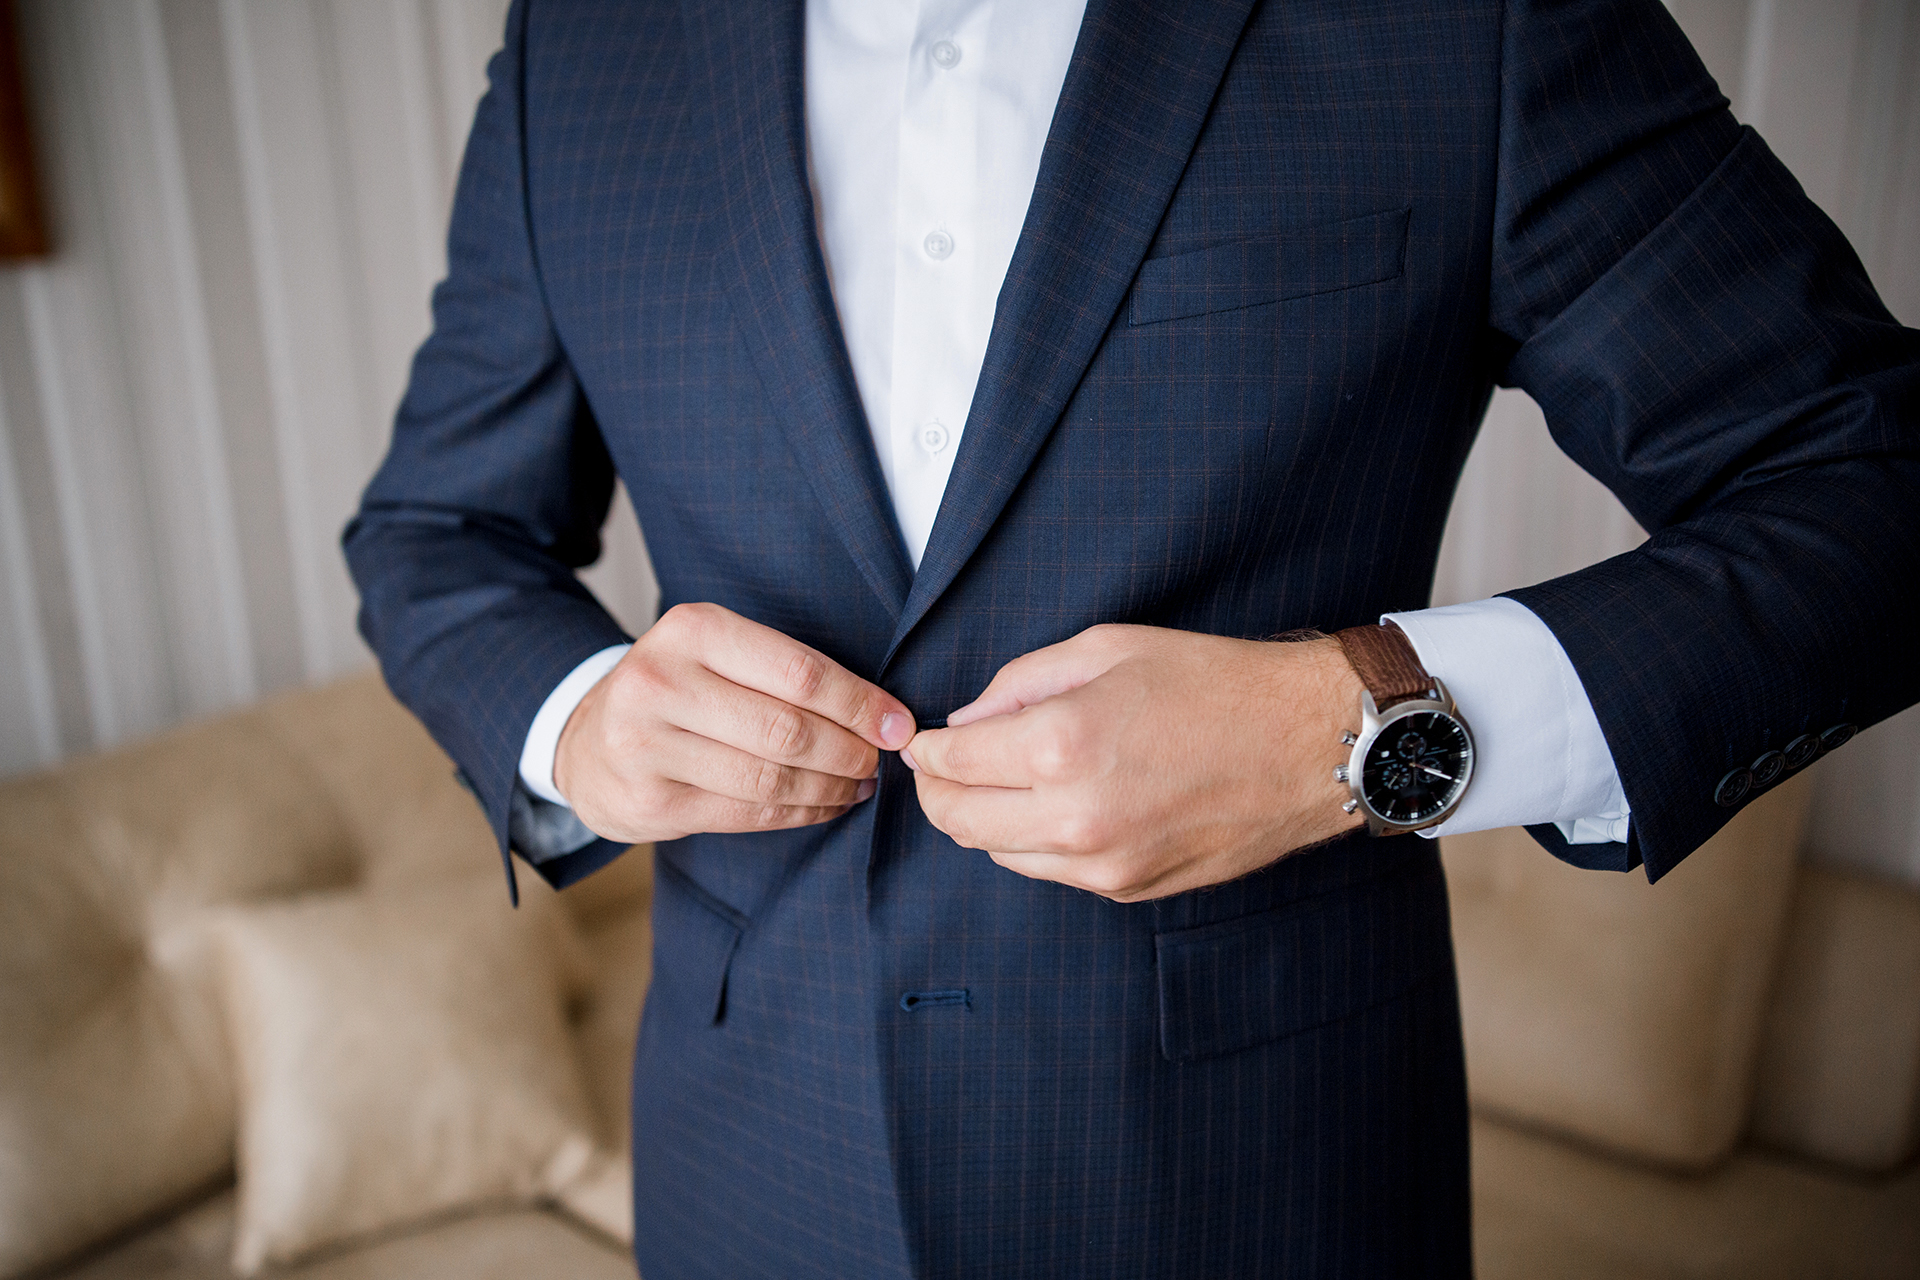 Details more than 162 three button suit jacket etiquette best ...